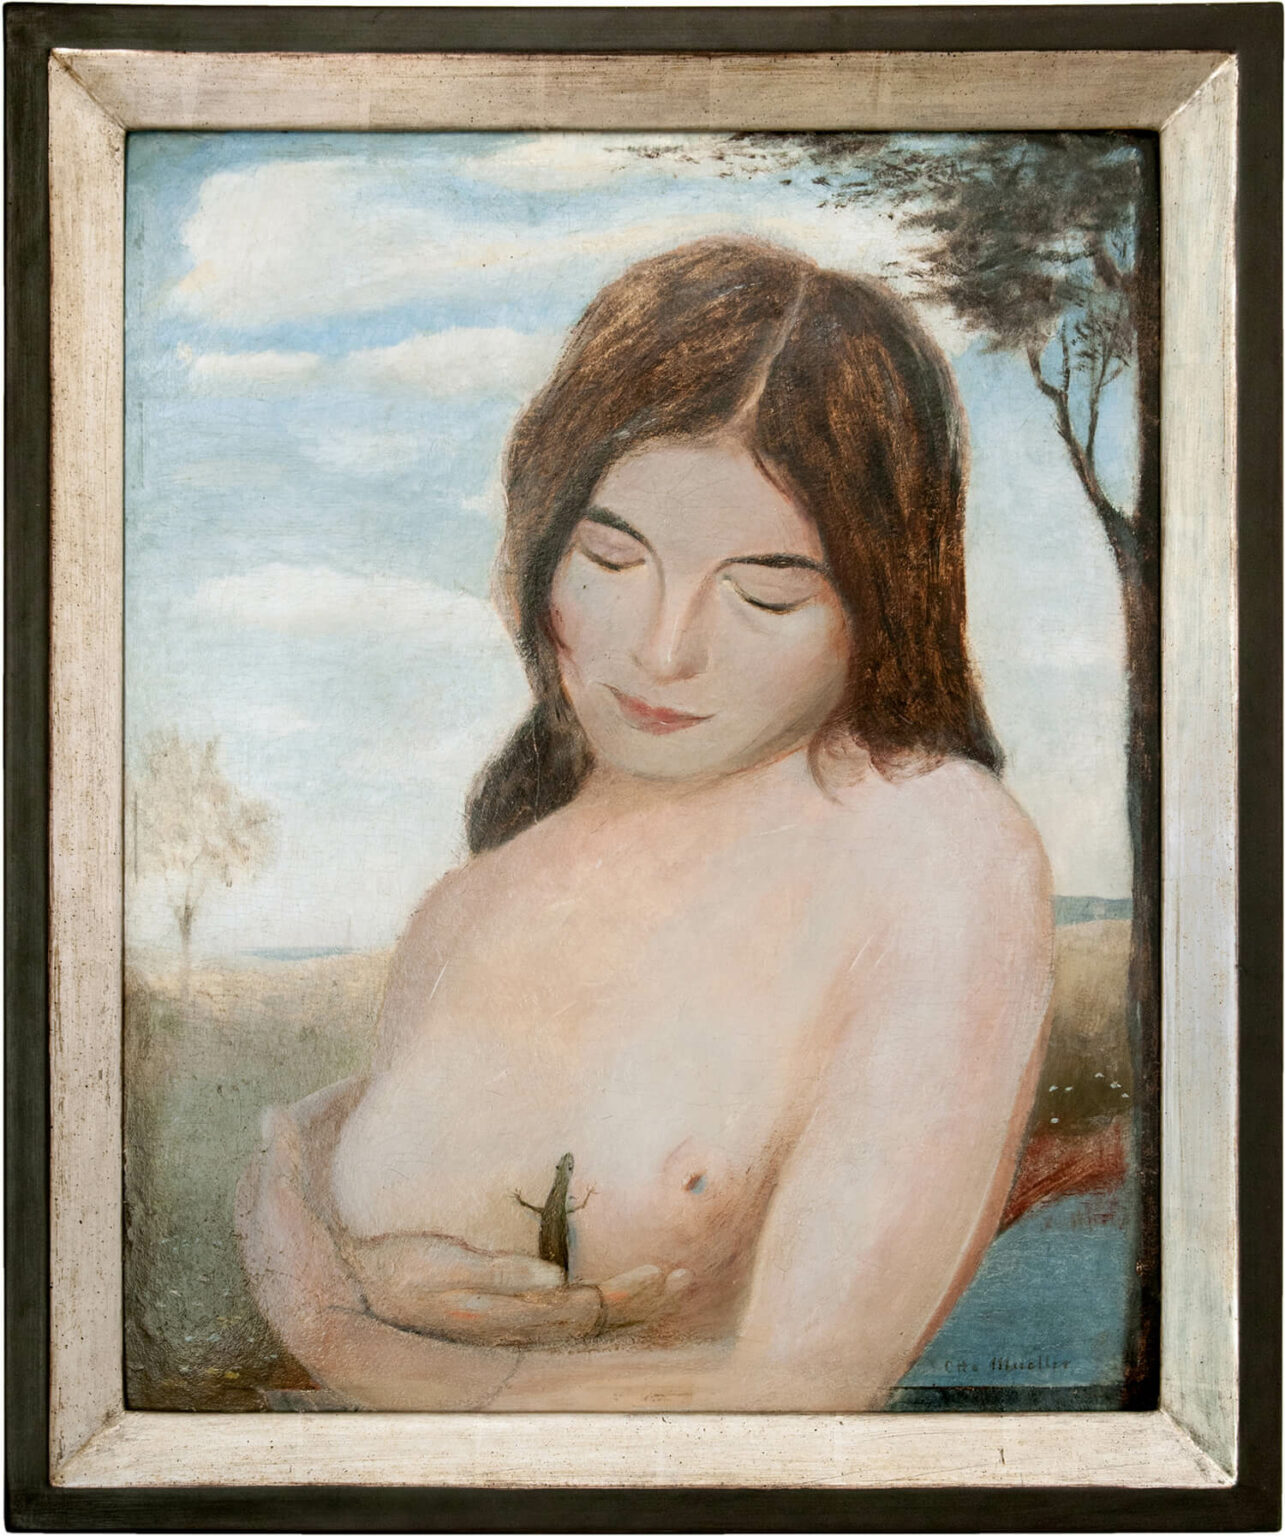 Otto Mueller, Junge Frau mit Eidechse, 1901, Öl auf Malkarton, 63,2 x 53 cm (gerahmt), unten rechts signiert, rückseitig betitelt und signiert